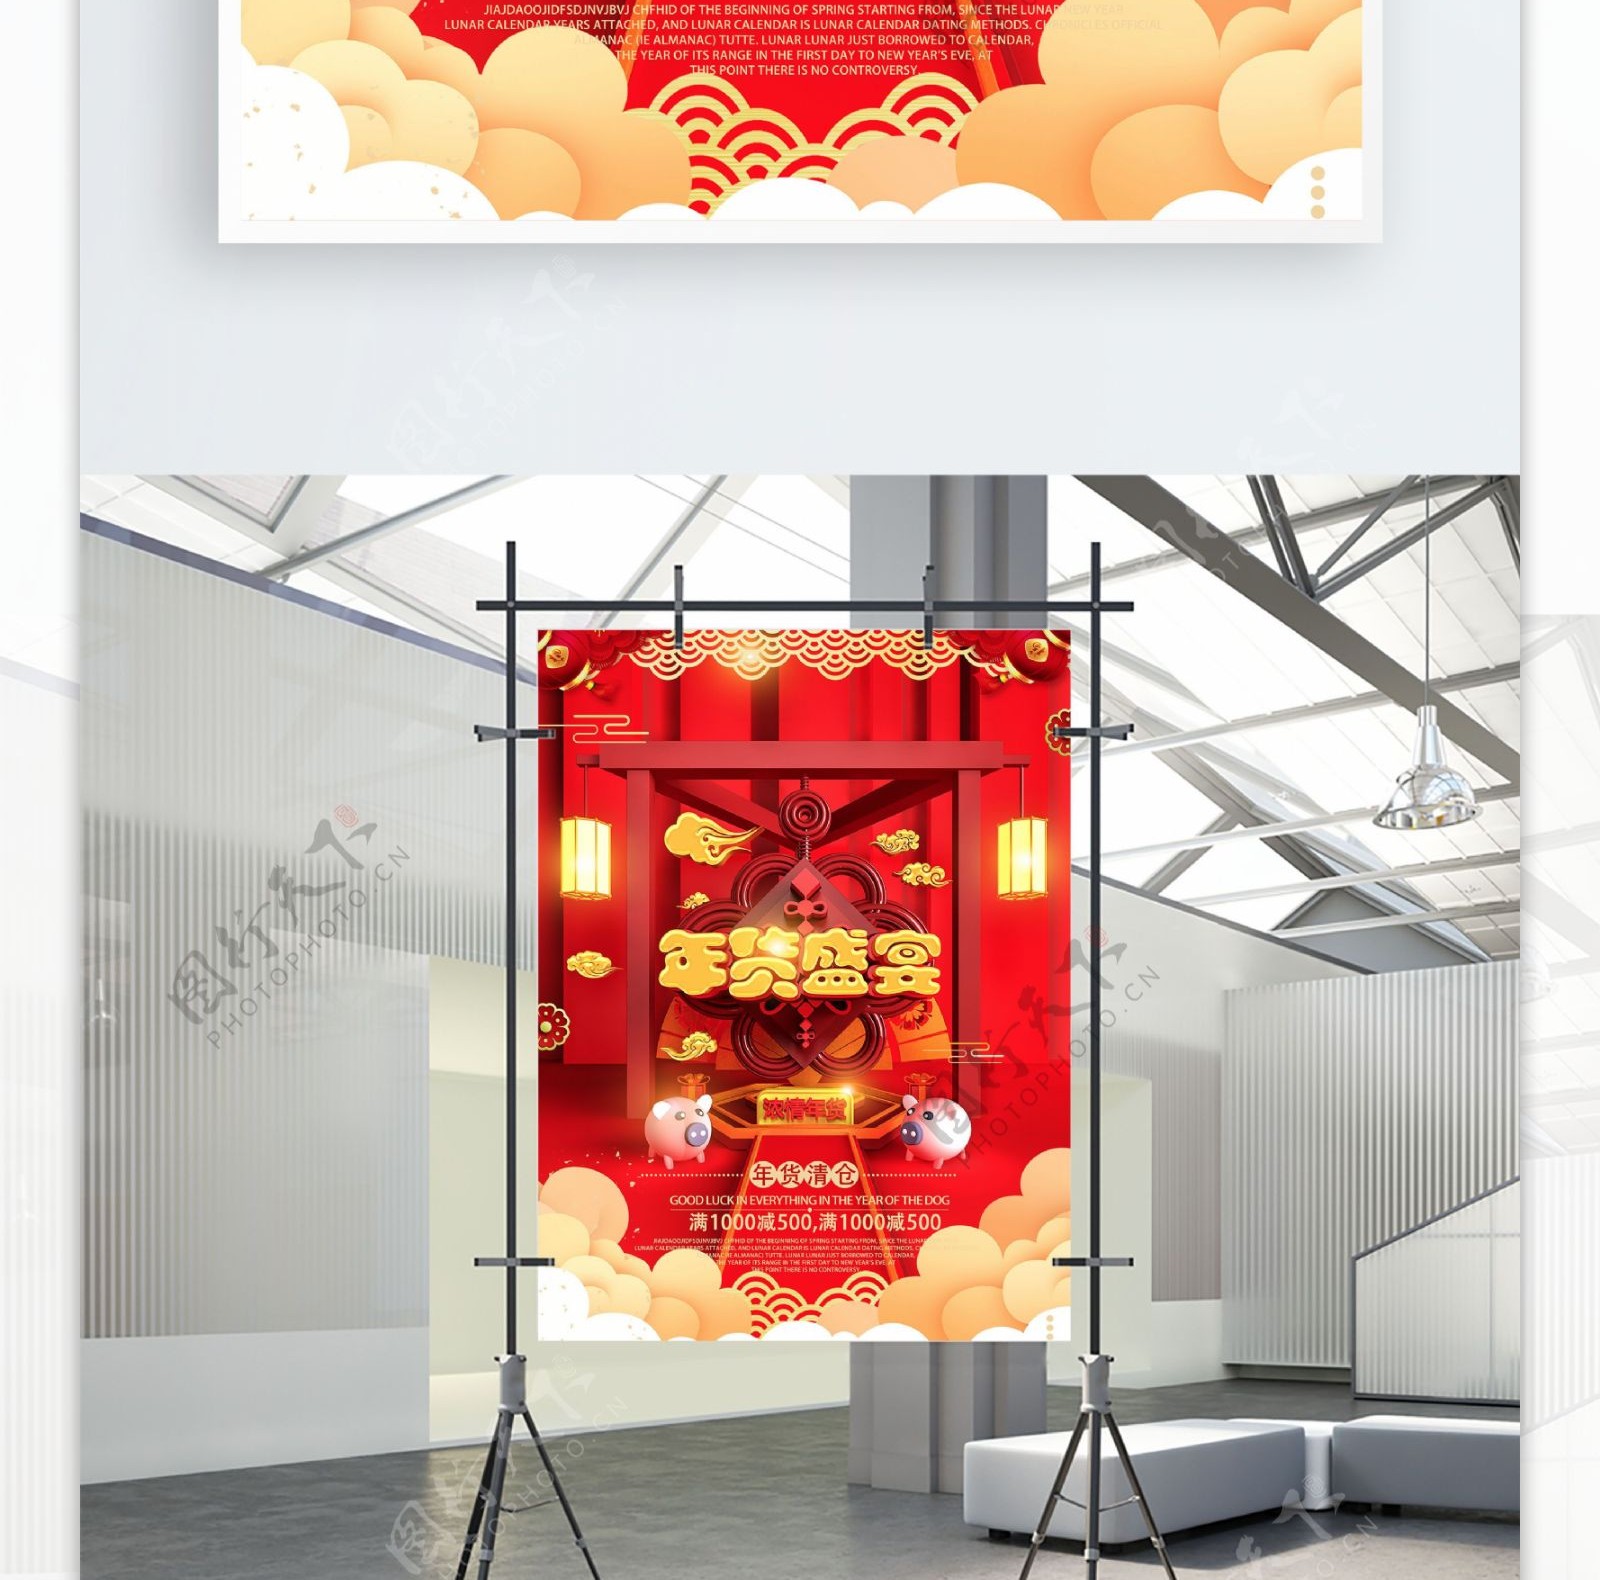 C4D红色喜庆年货盛宴年货节促销海报